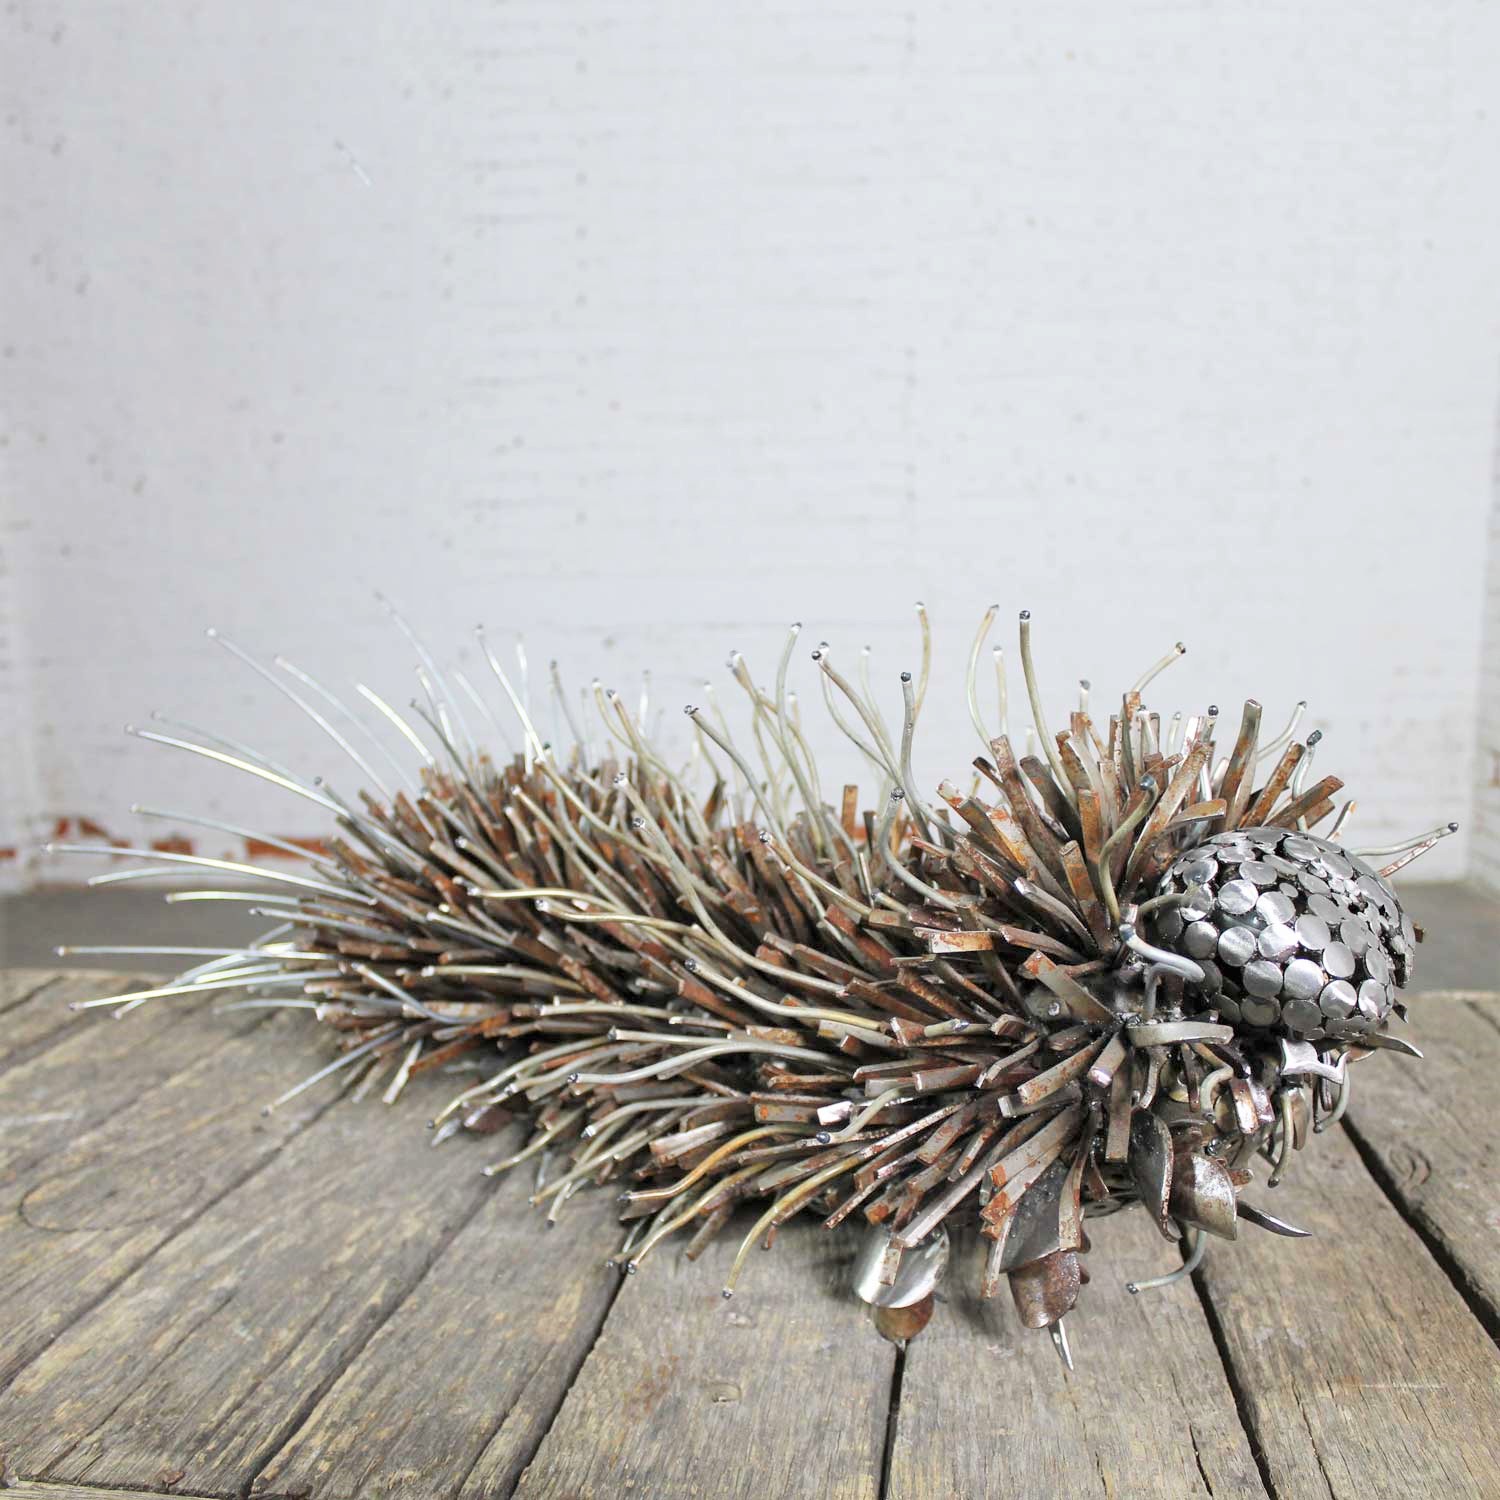 Caterpillar Sculpture or Garden Art of Reclaimed Metal by Jason Startup